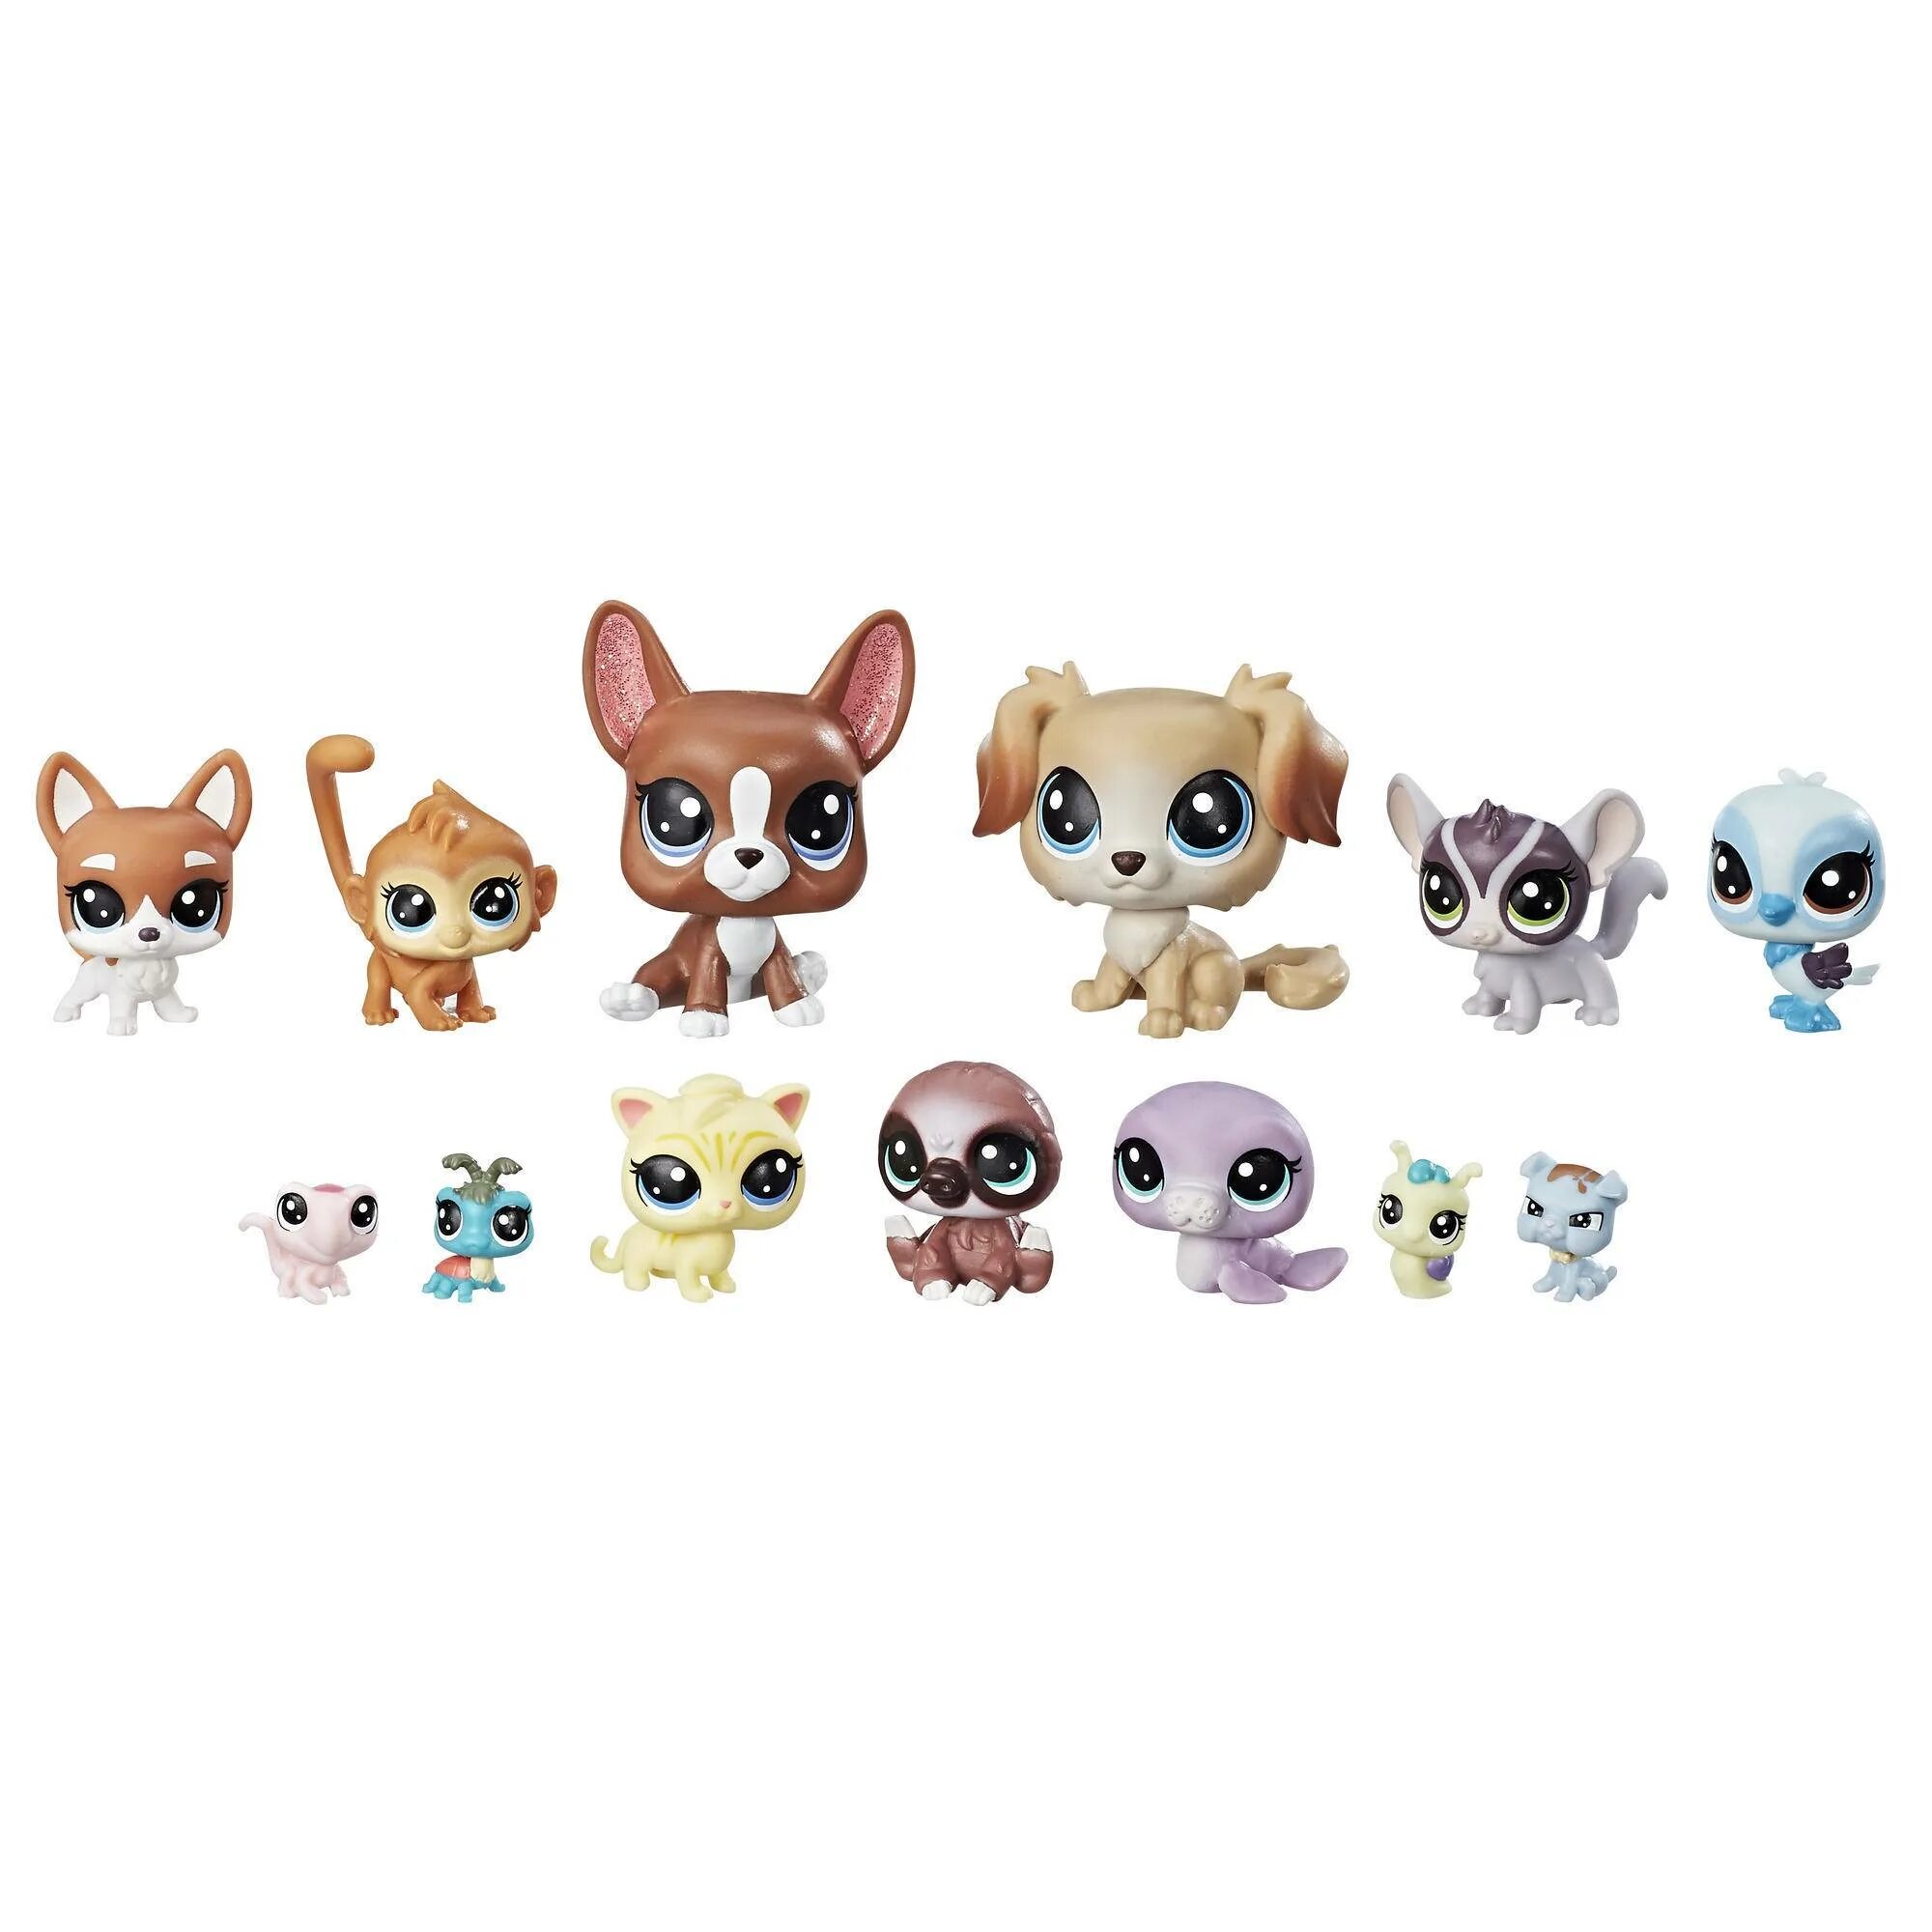 Игровой набор Littlest Pet shop коллекция петов b9343. Littlest Pet shop семья петов. Littlest Pet shop Toys. Little Pet shop Рокси. Pet shop domino